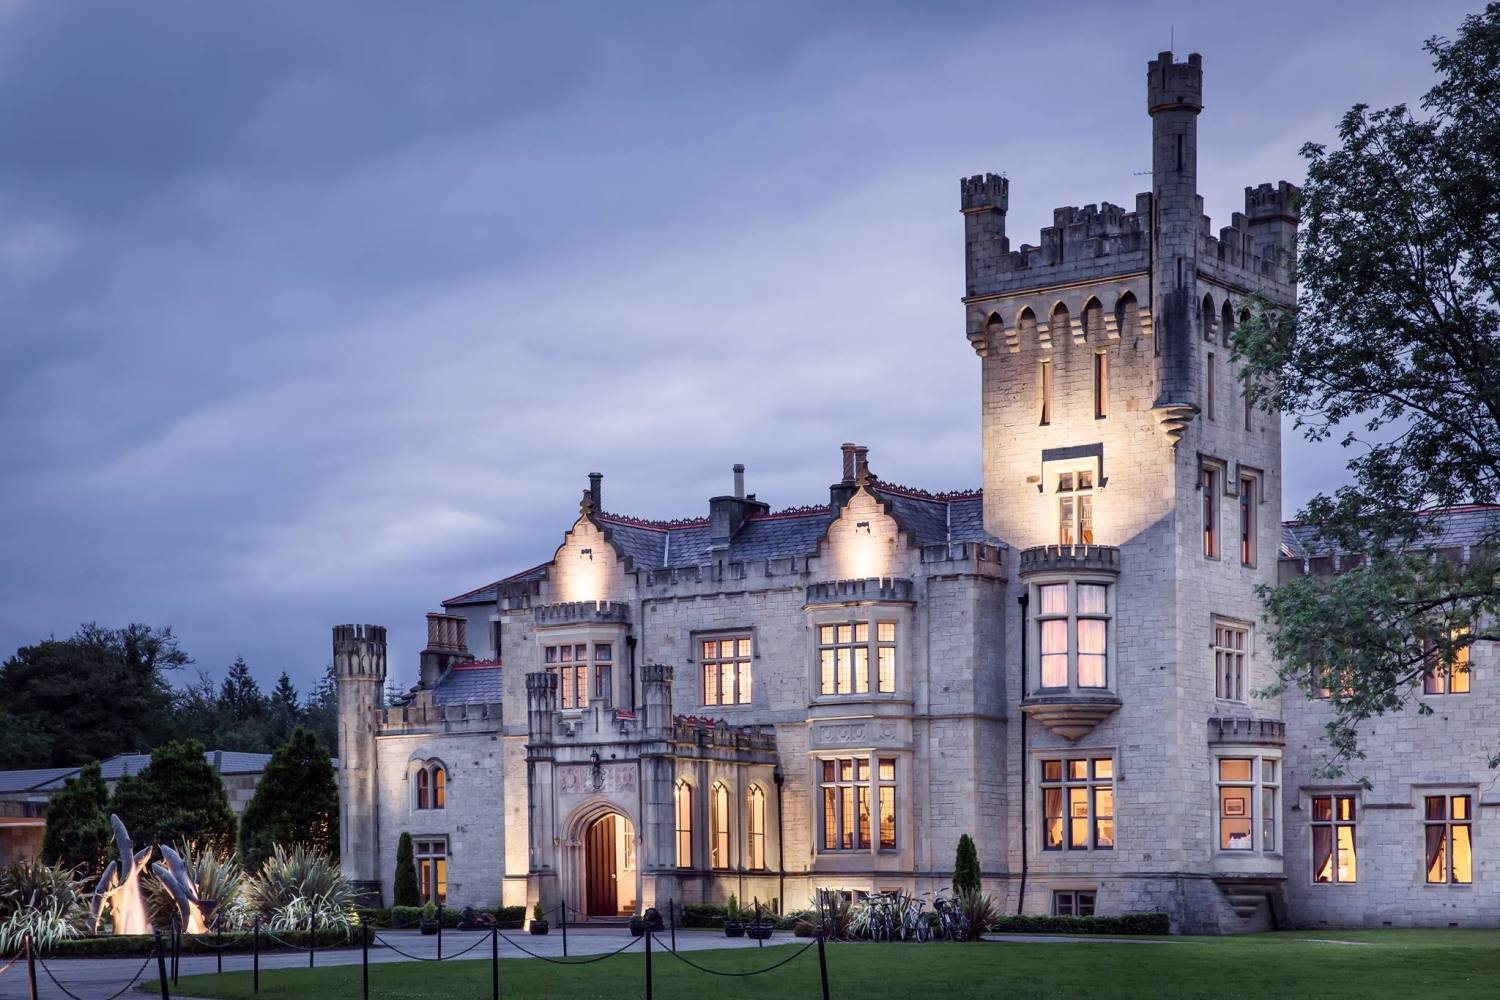 Lough Eske Castle Donegal - Ireland